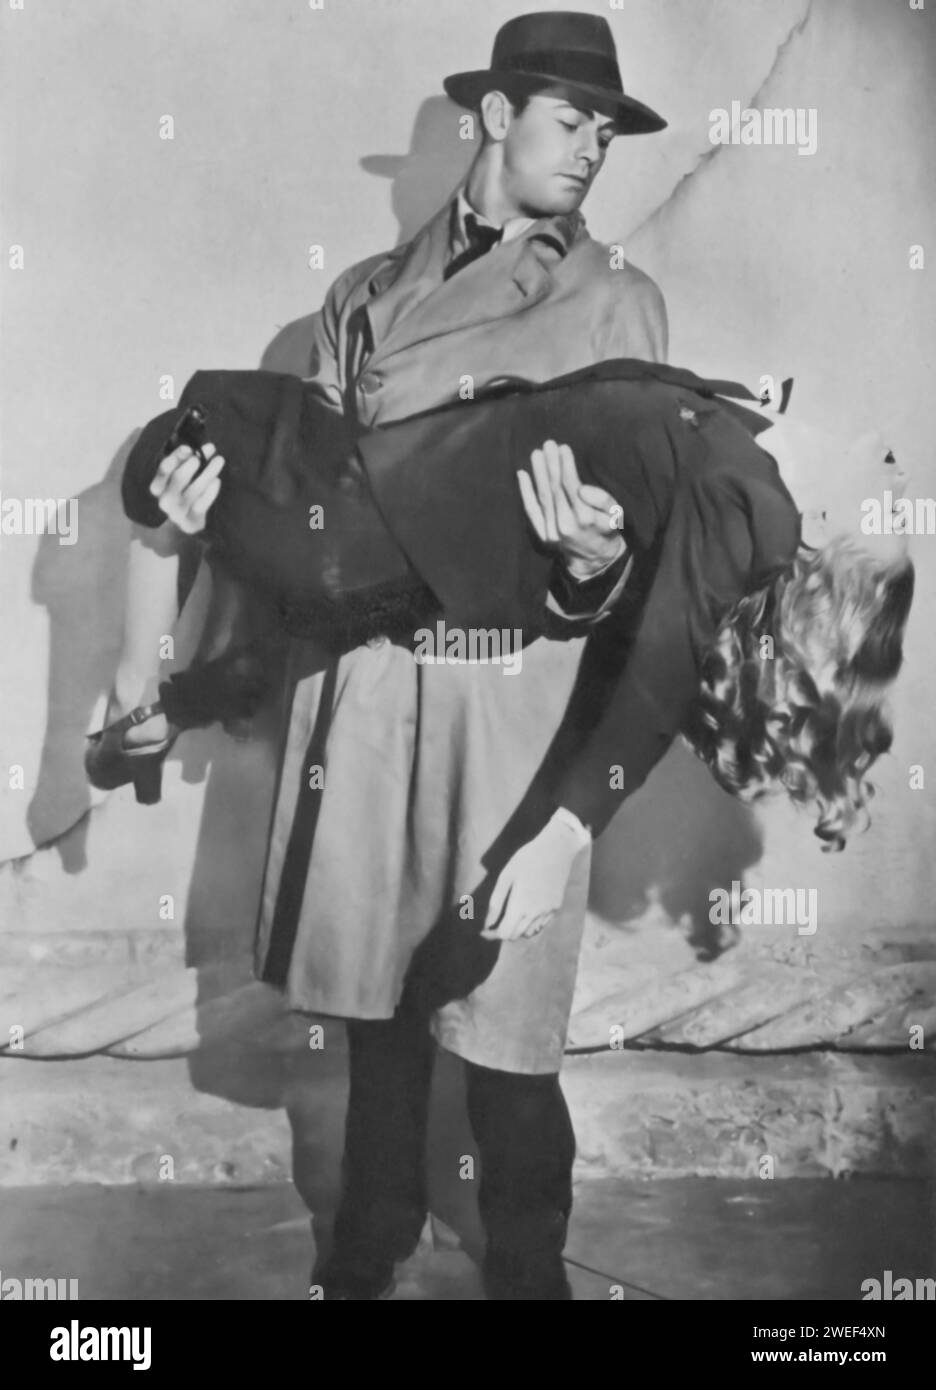 Alan Ladd, Veronica Lake und Laird Cregar spielen die Hauptrollen in „This Gun for Hire“ (1942), einem zentralen Film Noir. Im Film stellt Ladd Philip Raven dar, einen angeheuerten Attentäter mit einer unruhigen Vergangenheit, während Lake Ellen Graham, eine Undercover-Agentin, spielt. Cregar spielt eine denkwürdige Rolle als Willard Gates, ein korrupter Geschäftsmann, der an Spionage beteiligt ist. Stockfoto